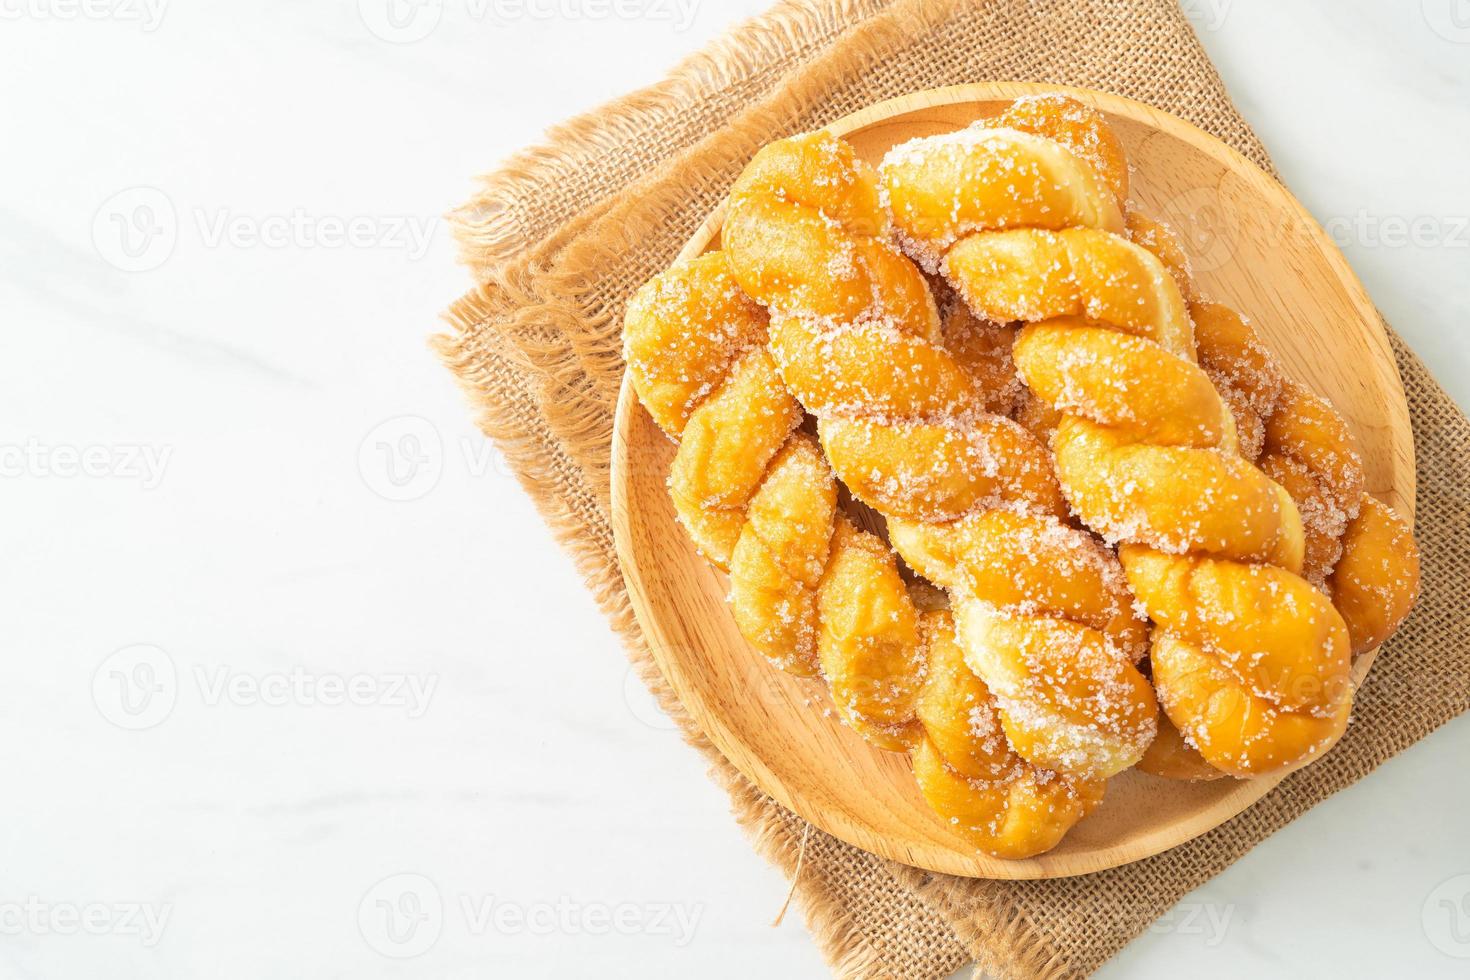 sockermunk i spiralform på träplatta foto